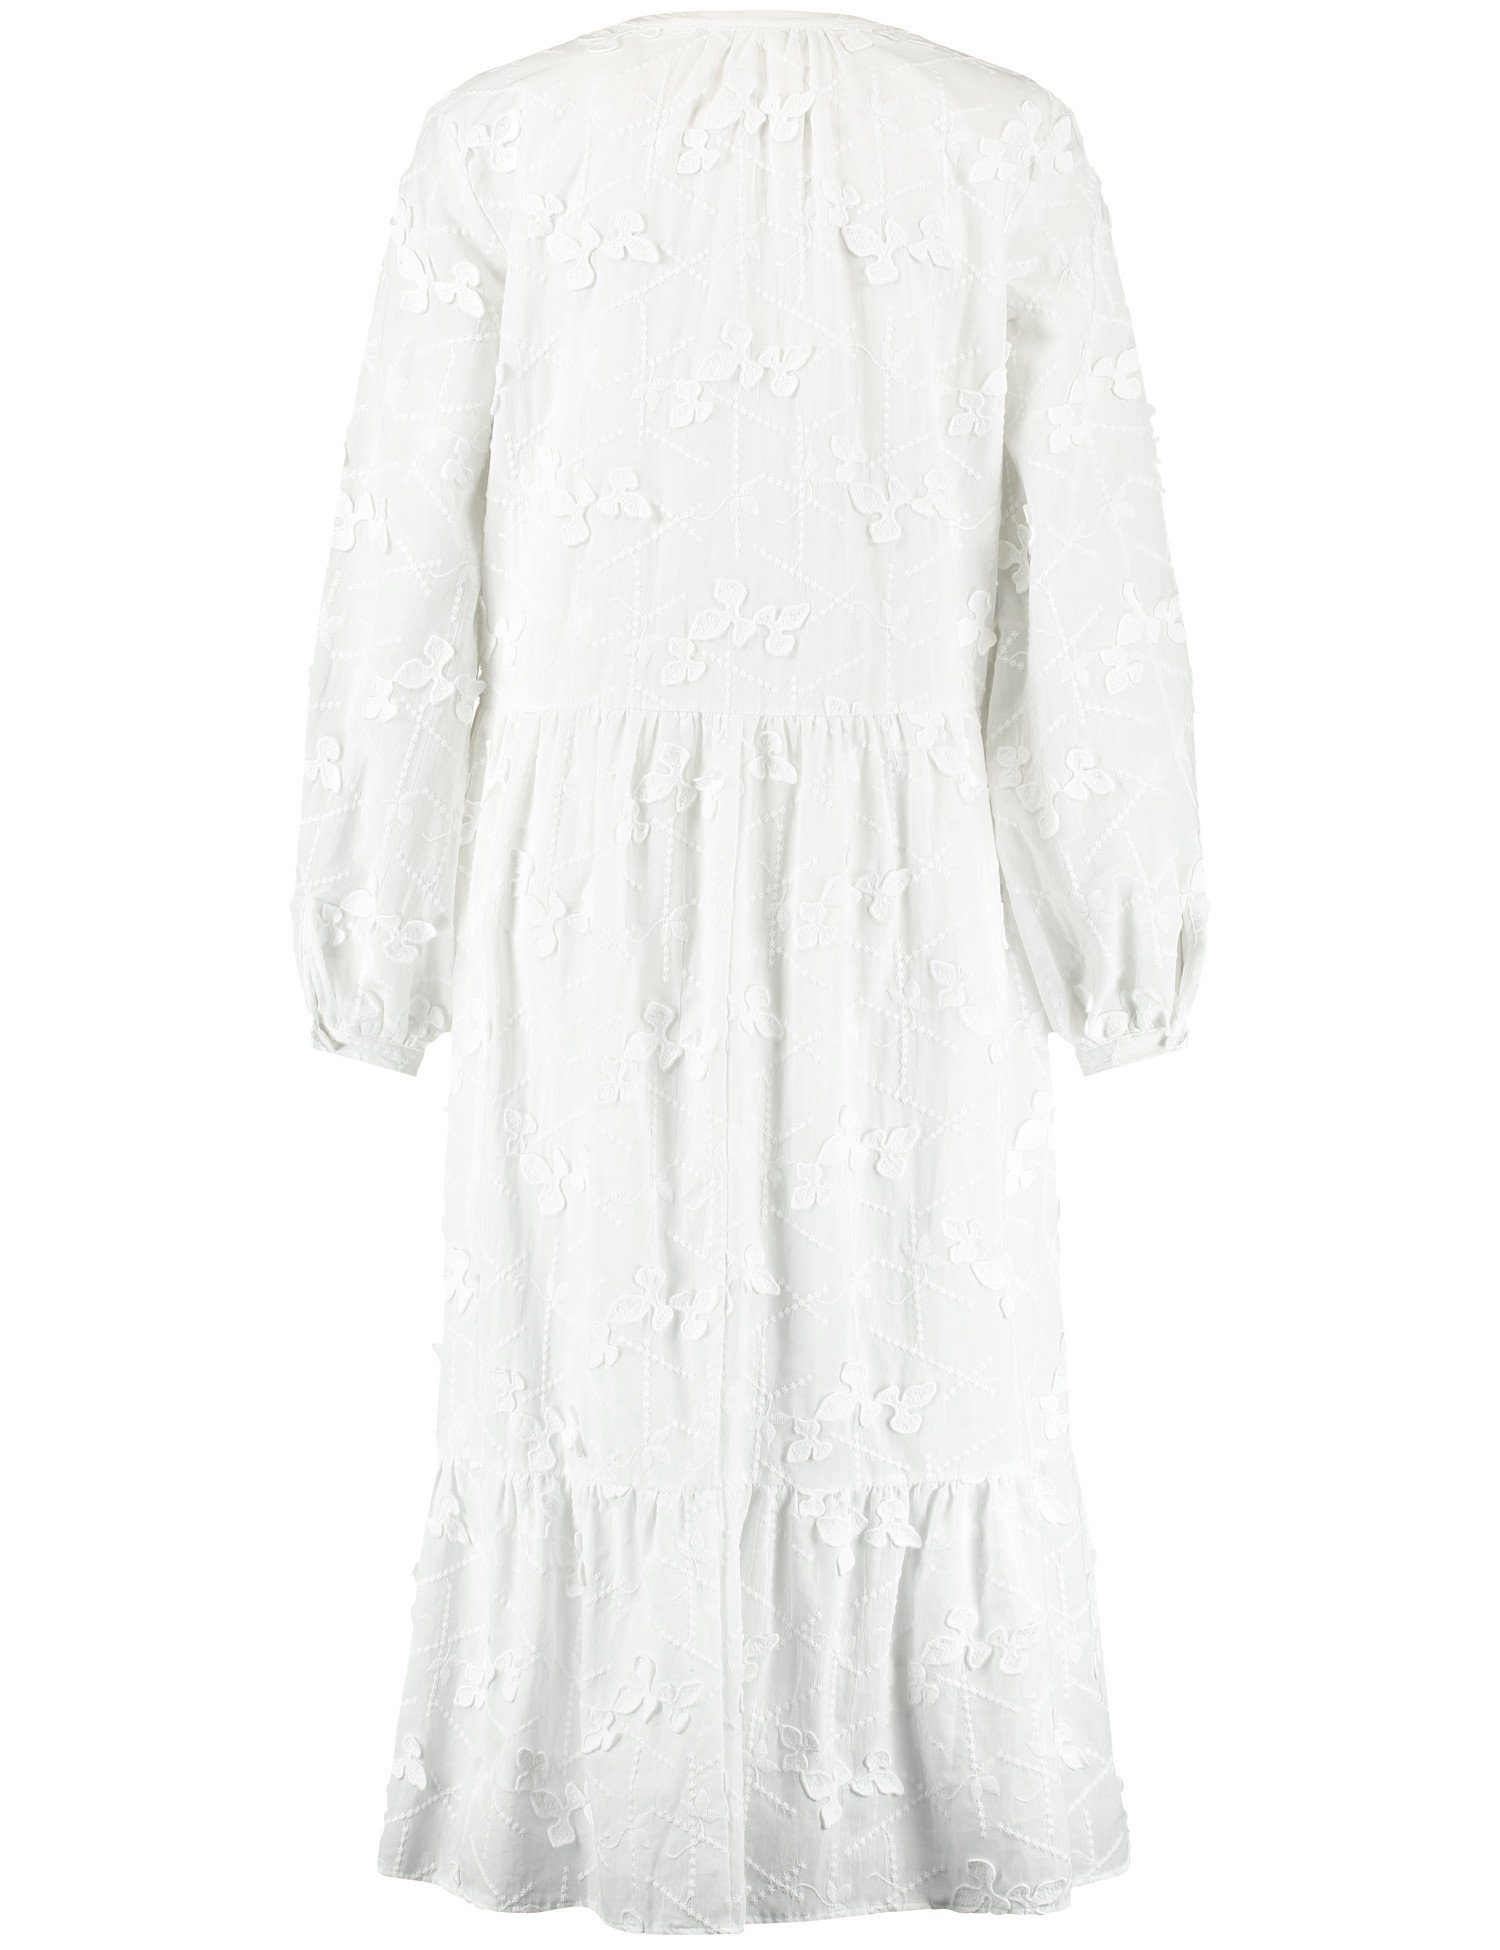 Taifun Minikleid Leichtes A-Linien-Kleid Offwhite mit Baumwollspitze